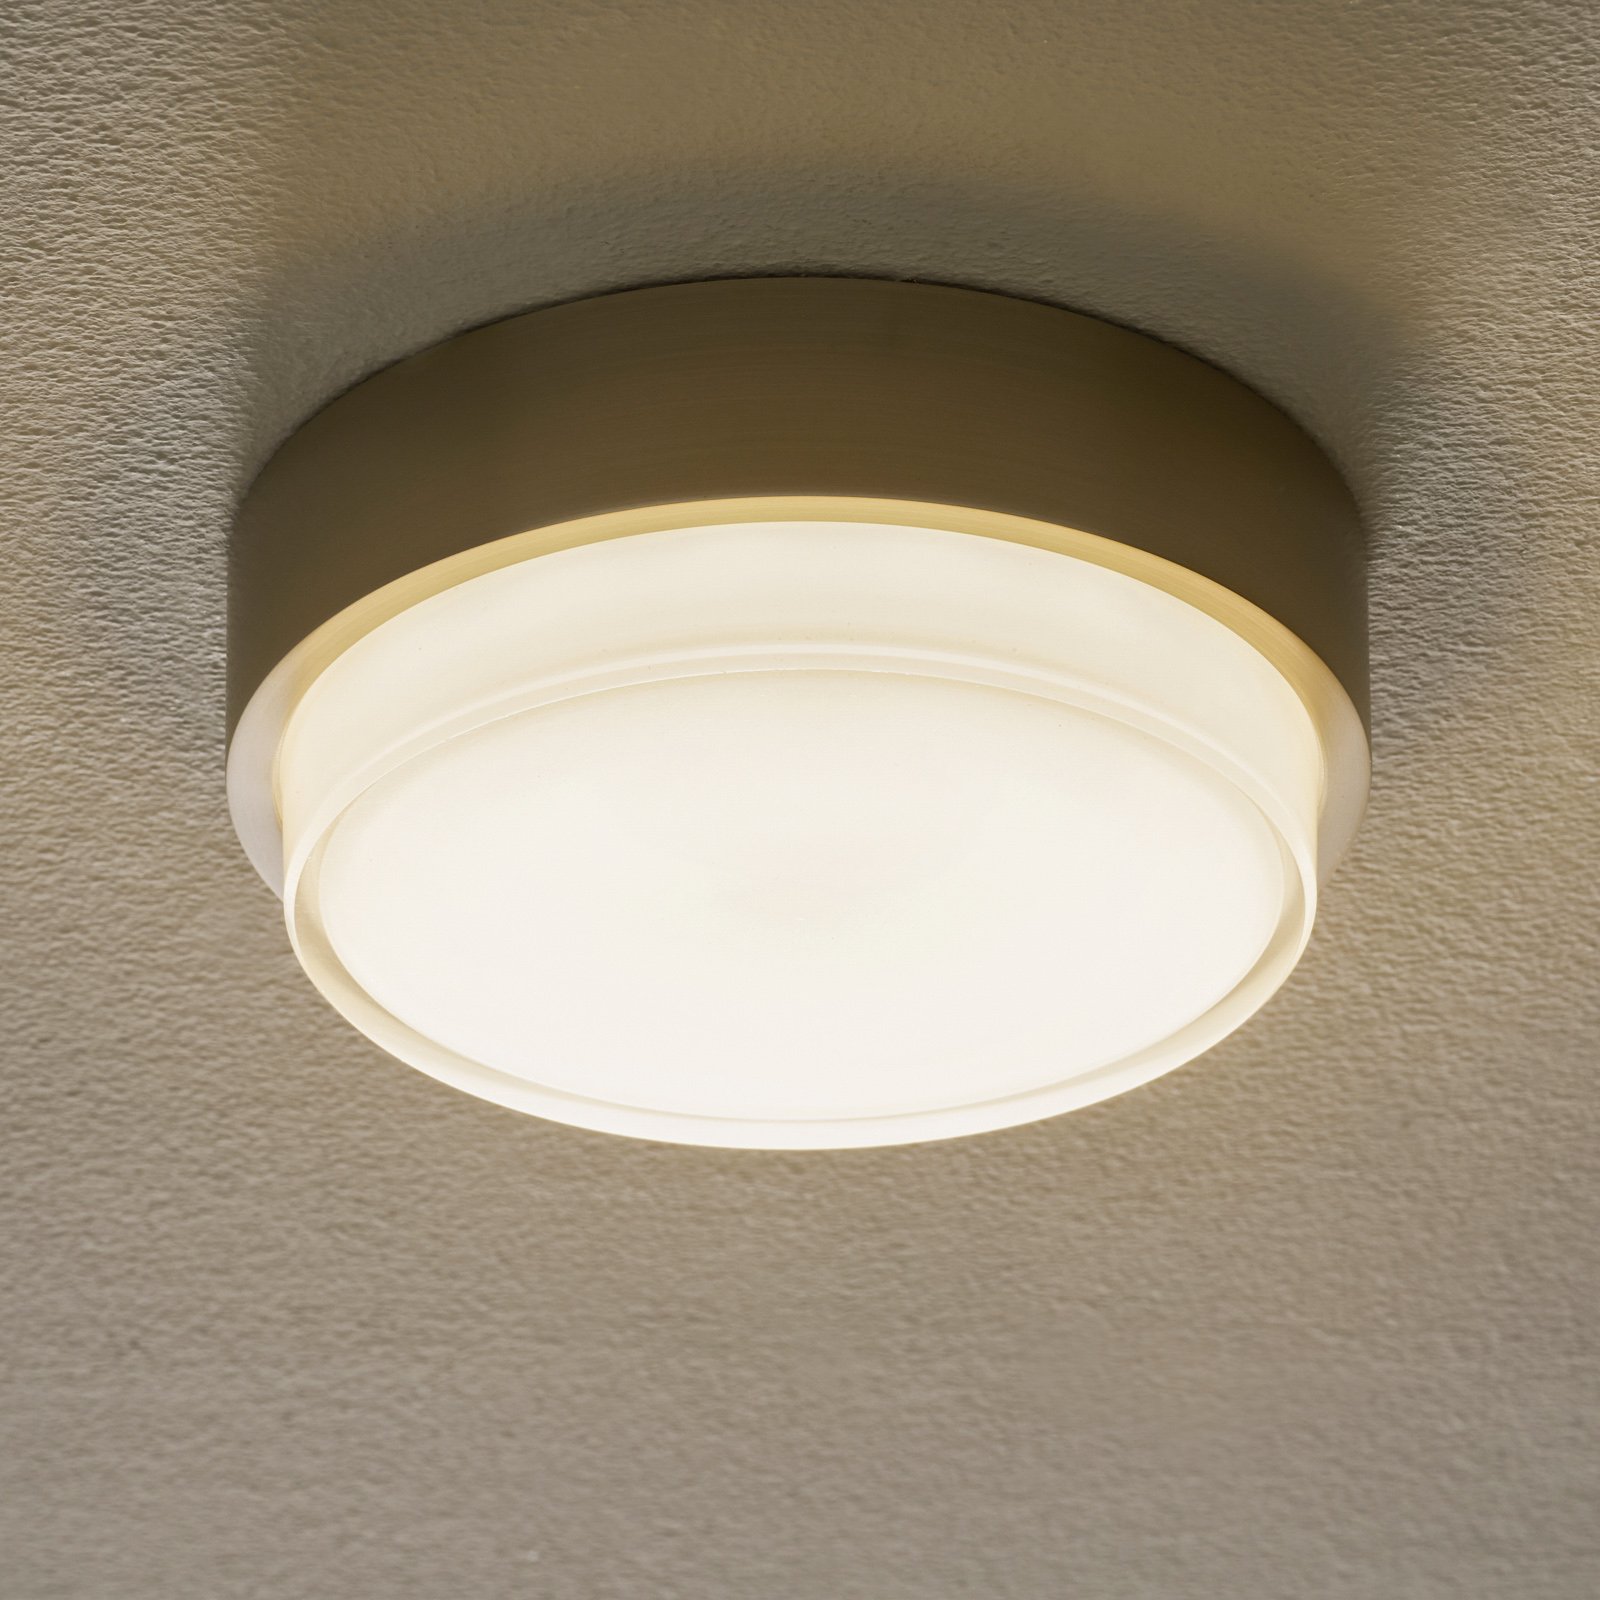 BEGA 50536 LED ceiling light 930 steel Ø 21 cm